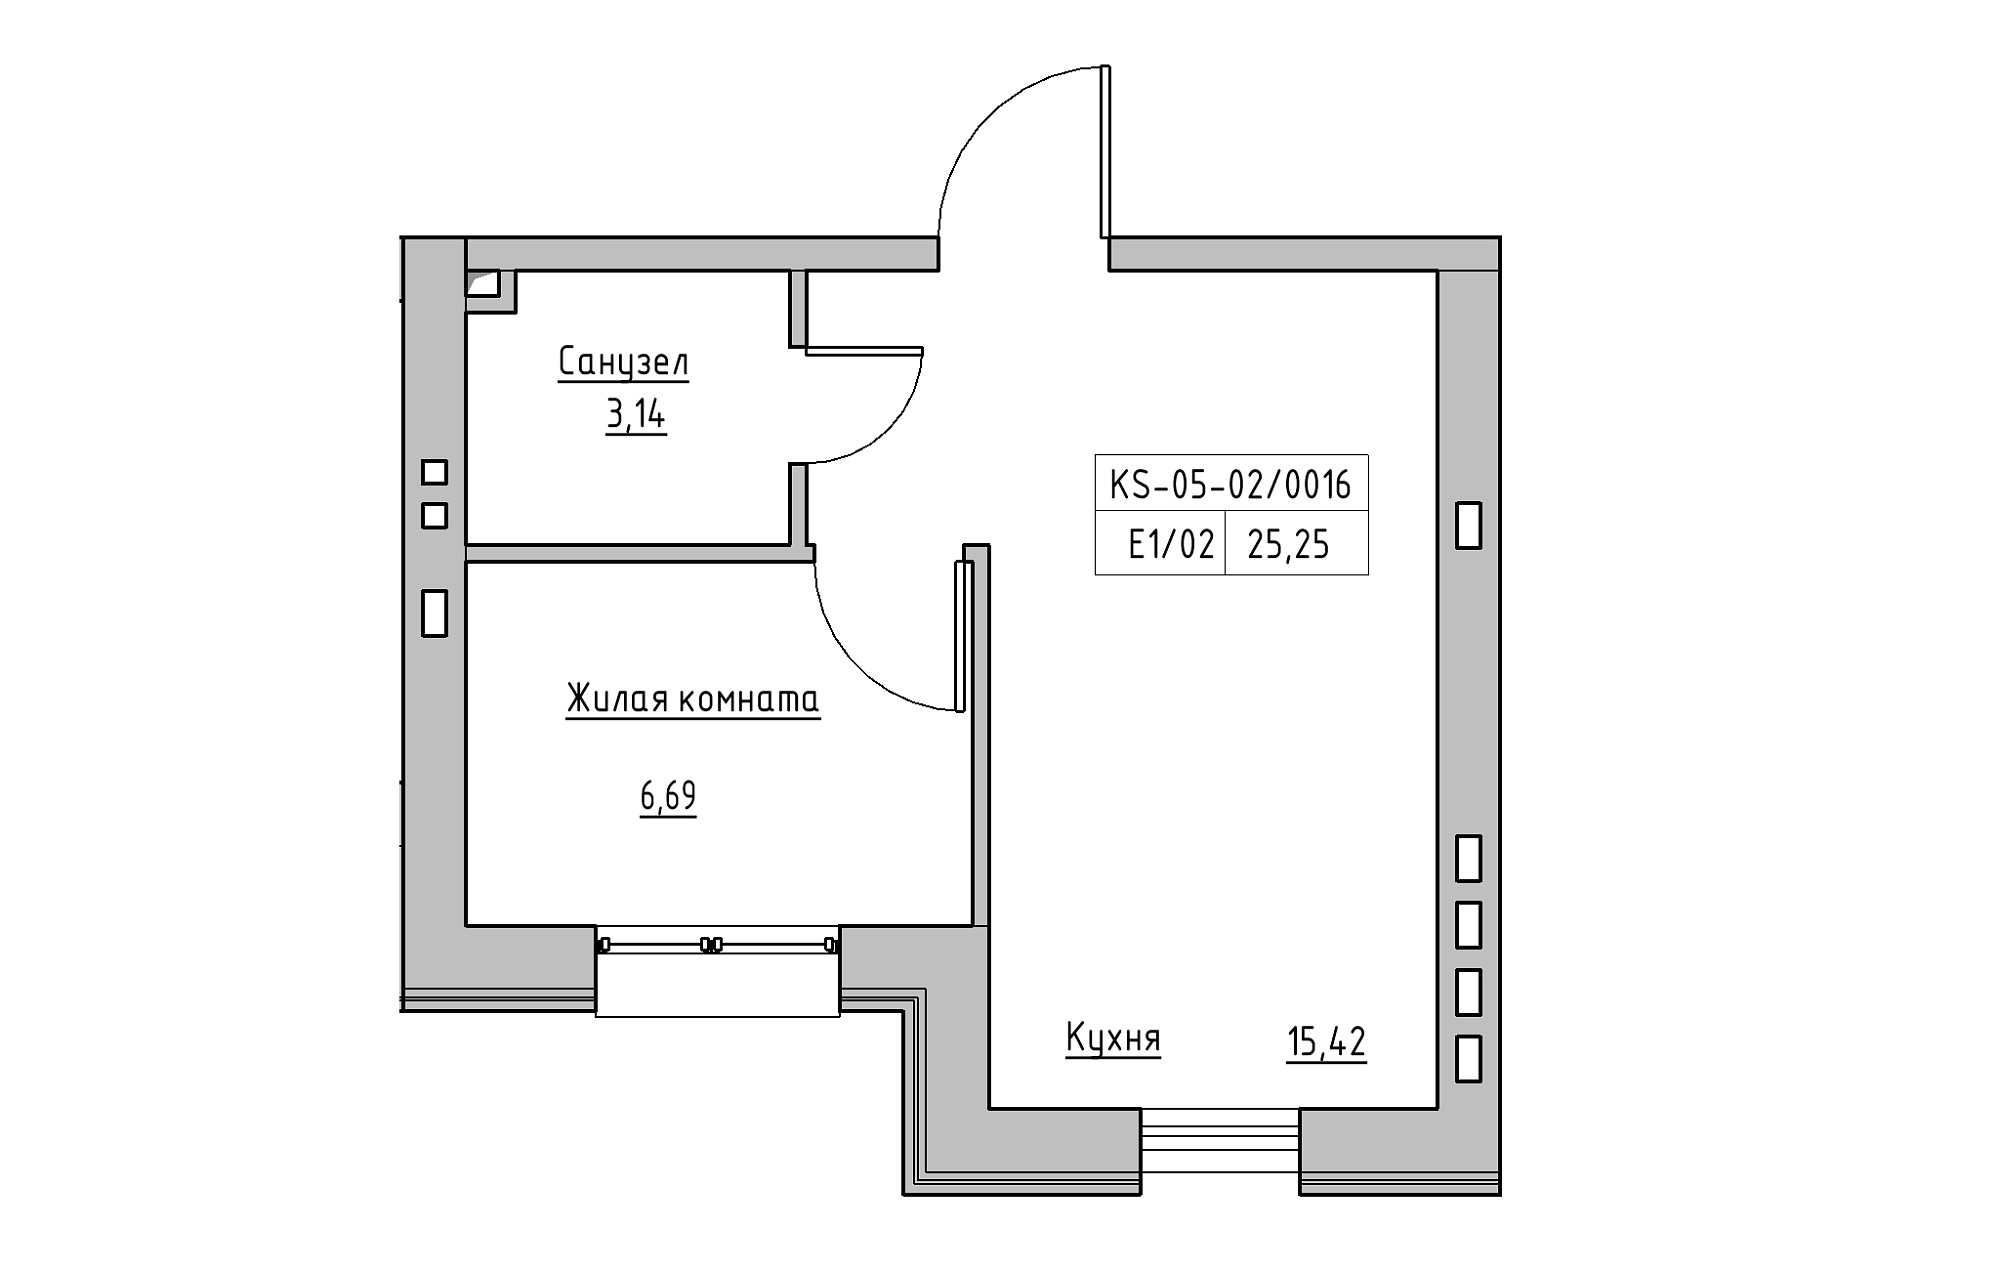 Планировка 1-к квартира площей 25.25м2, KS-005-05/0016.